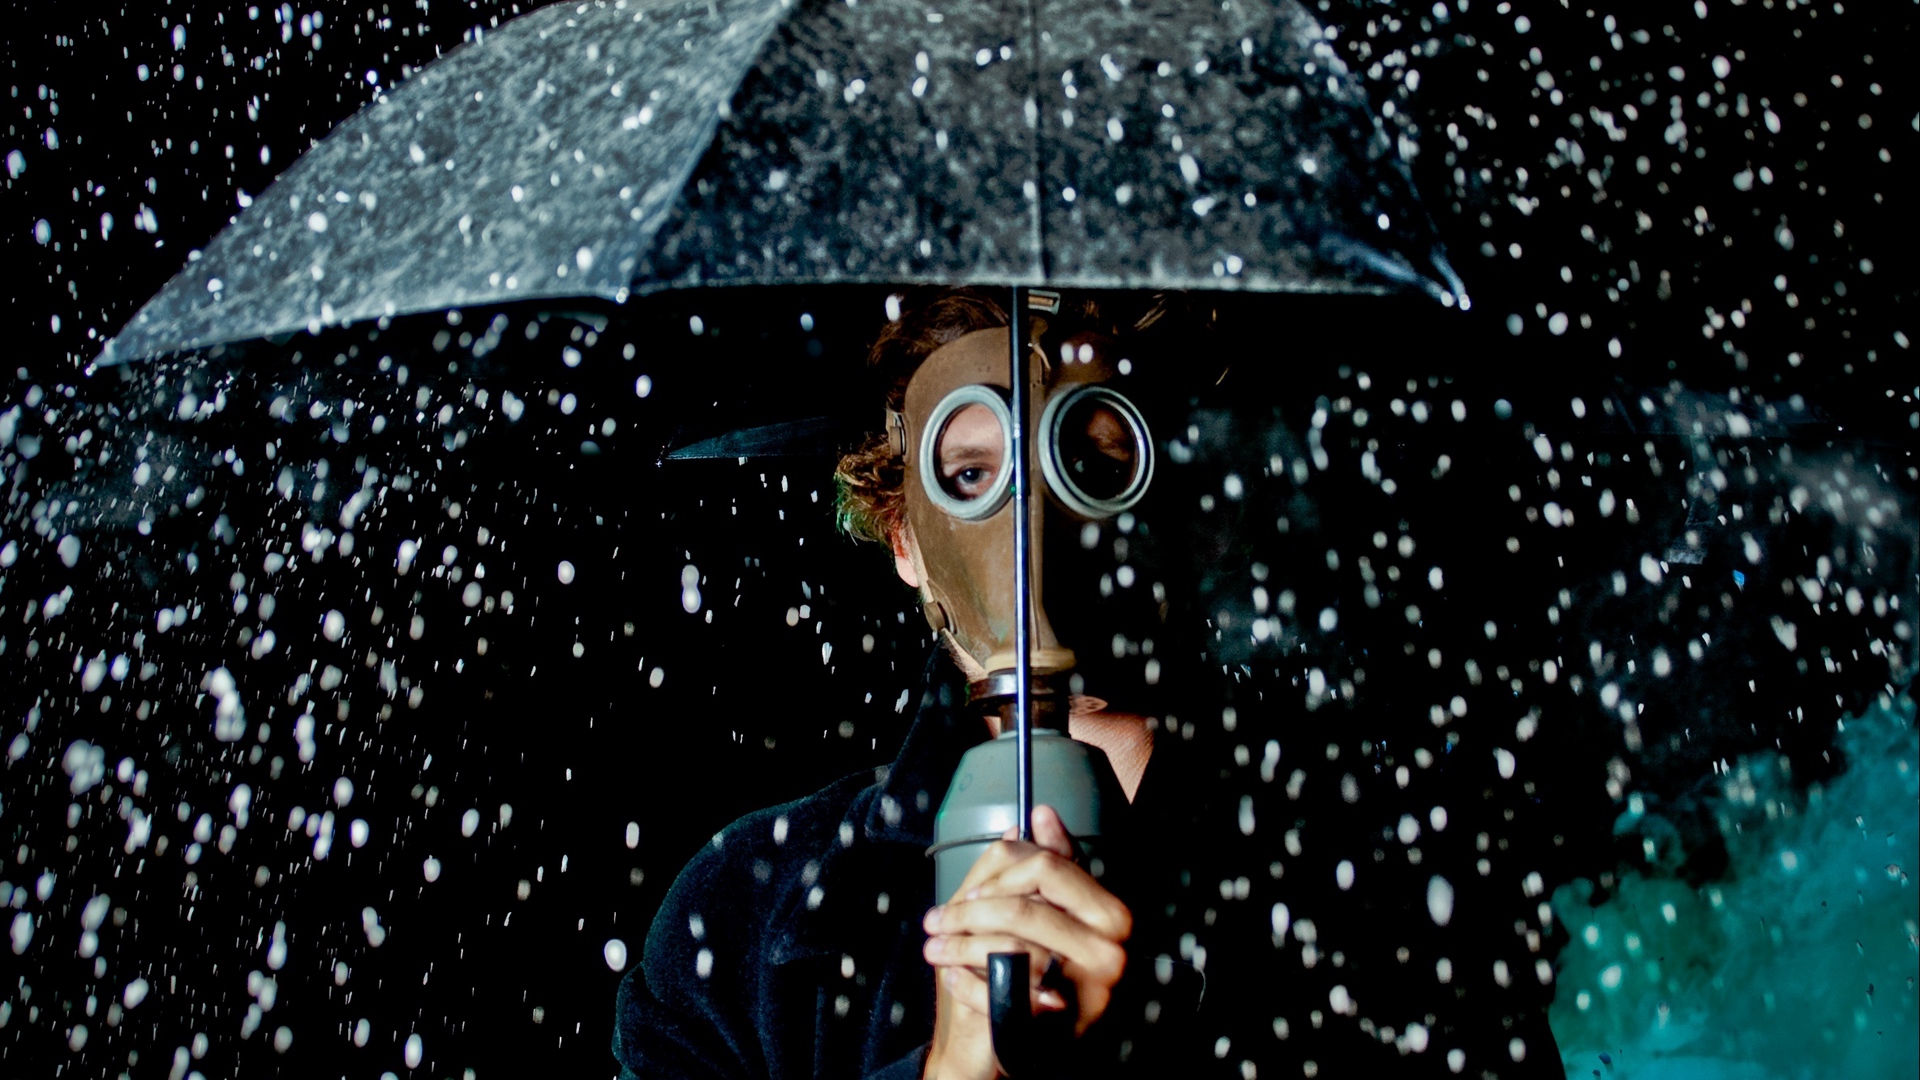 Wallpaper Man, Gas Mask, Umbrella, Rain, Mood - Gas Mask - HD Wallpaper 